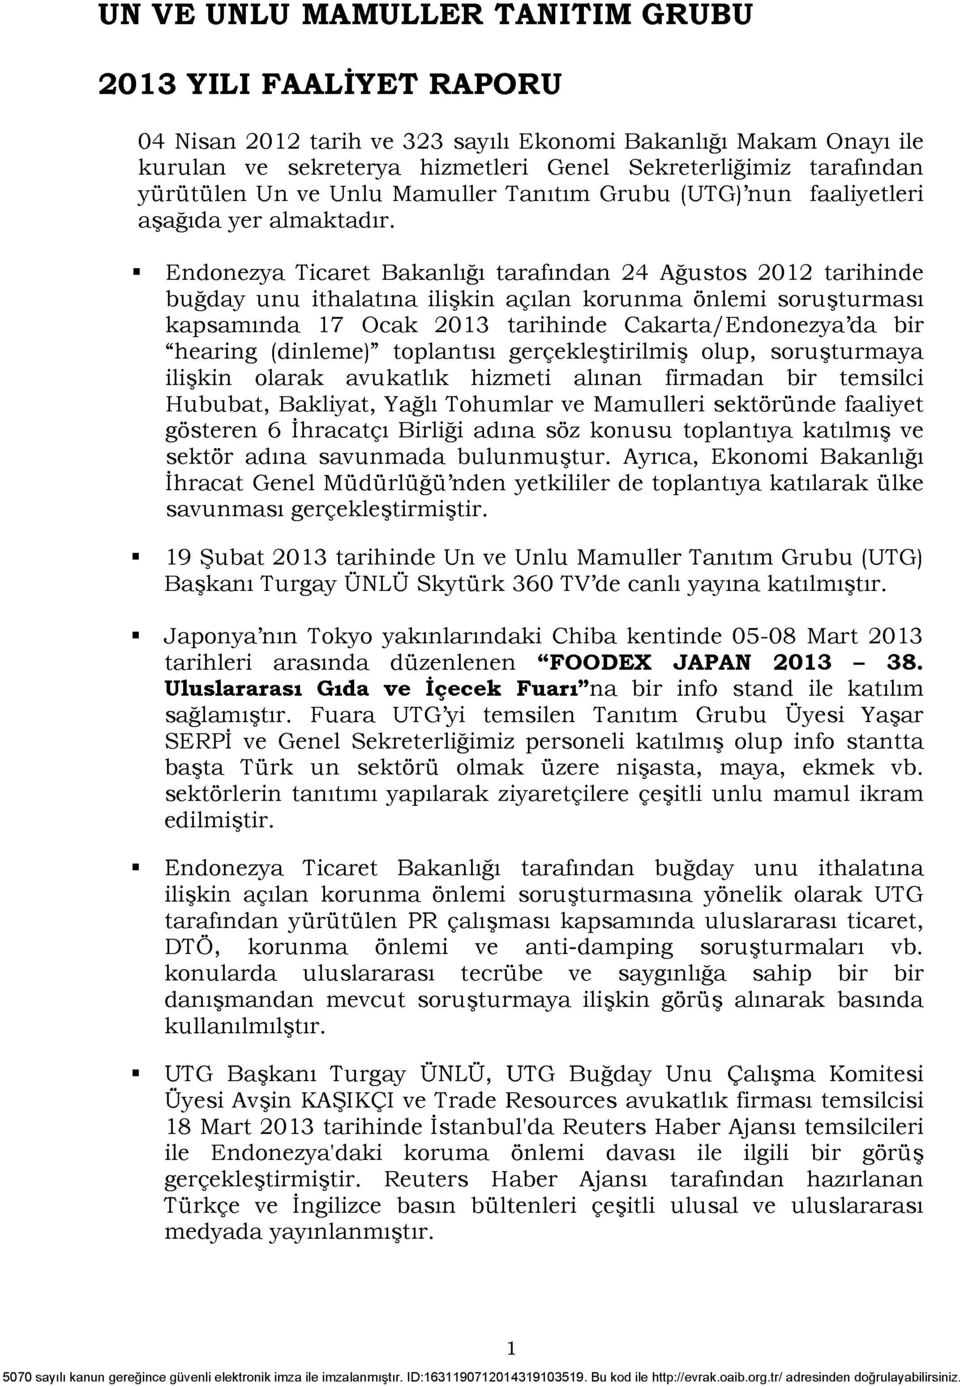 Endonezya Ticaret Bakanlığı tarafından 24 Ağustos 2012 tarihinde buğday unu ithalatına ilişkin açılan korunma önlemi soruşturması kapsamında 17 Ocak 2013 tarihinde Cakarta/Endonezya'da bir "hearing